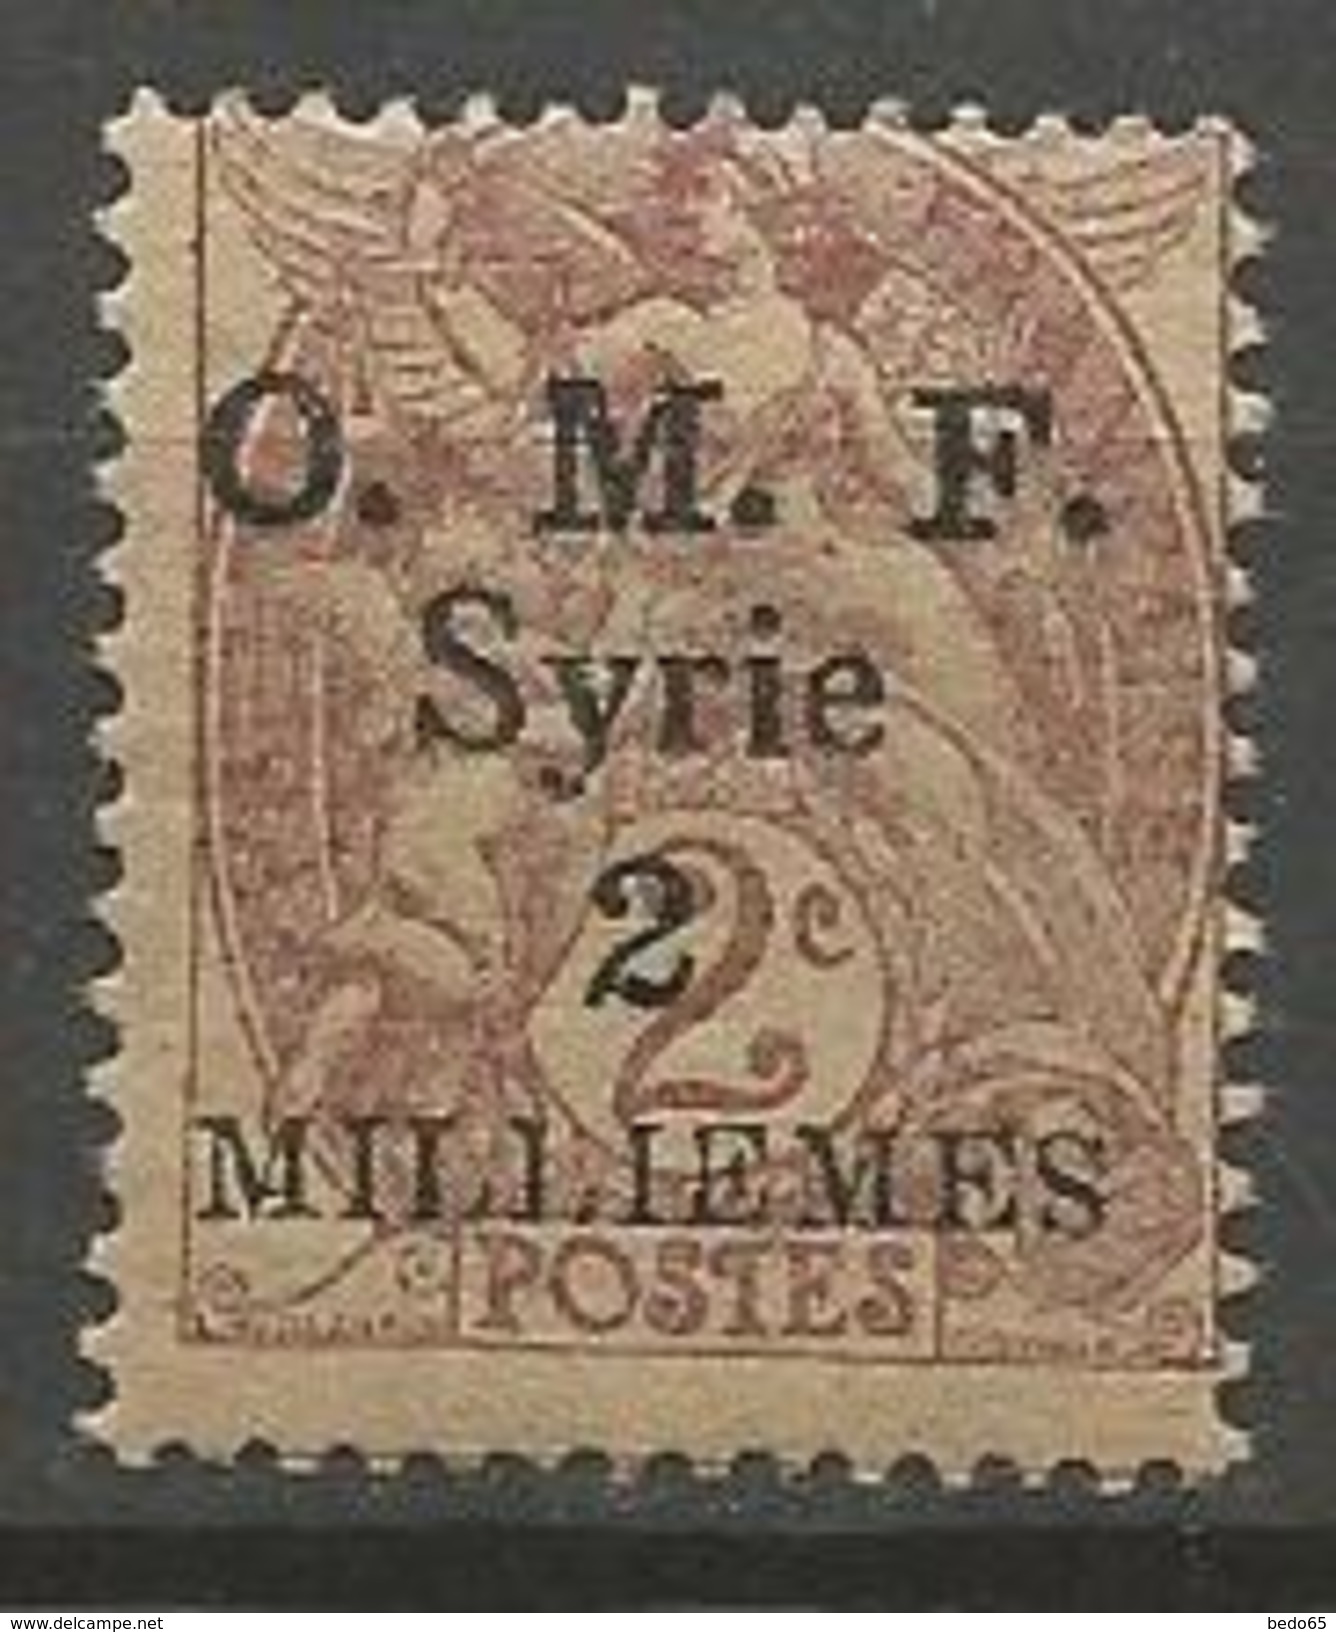 SYRIE   N° 26 Variétée S Renversé NEUF** LUXE SANS CHARNIERE / MNH / Rare - Unused Stamps